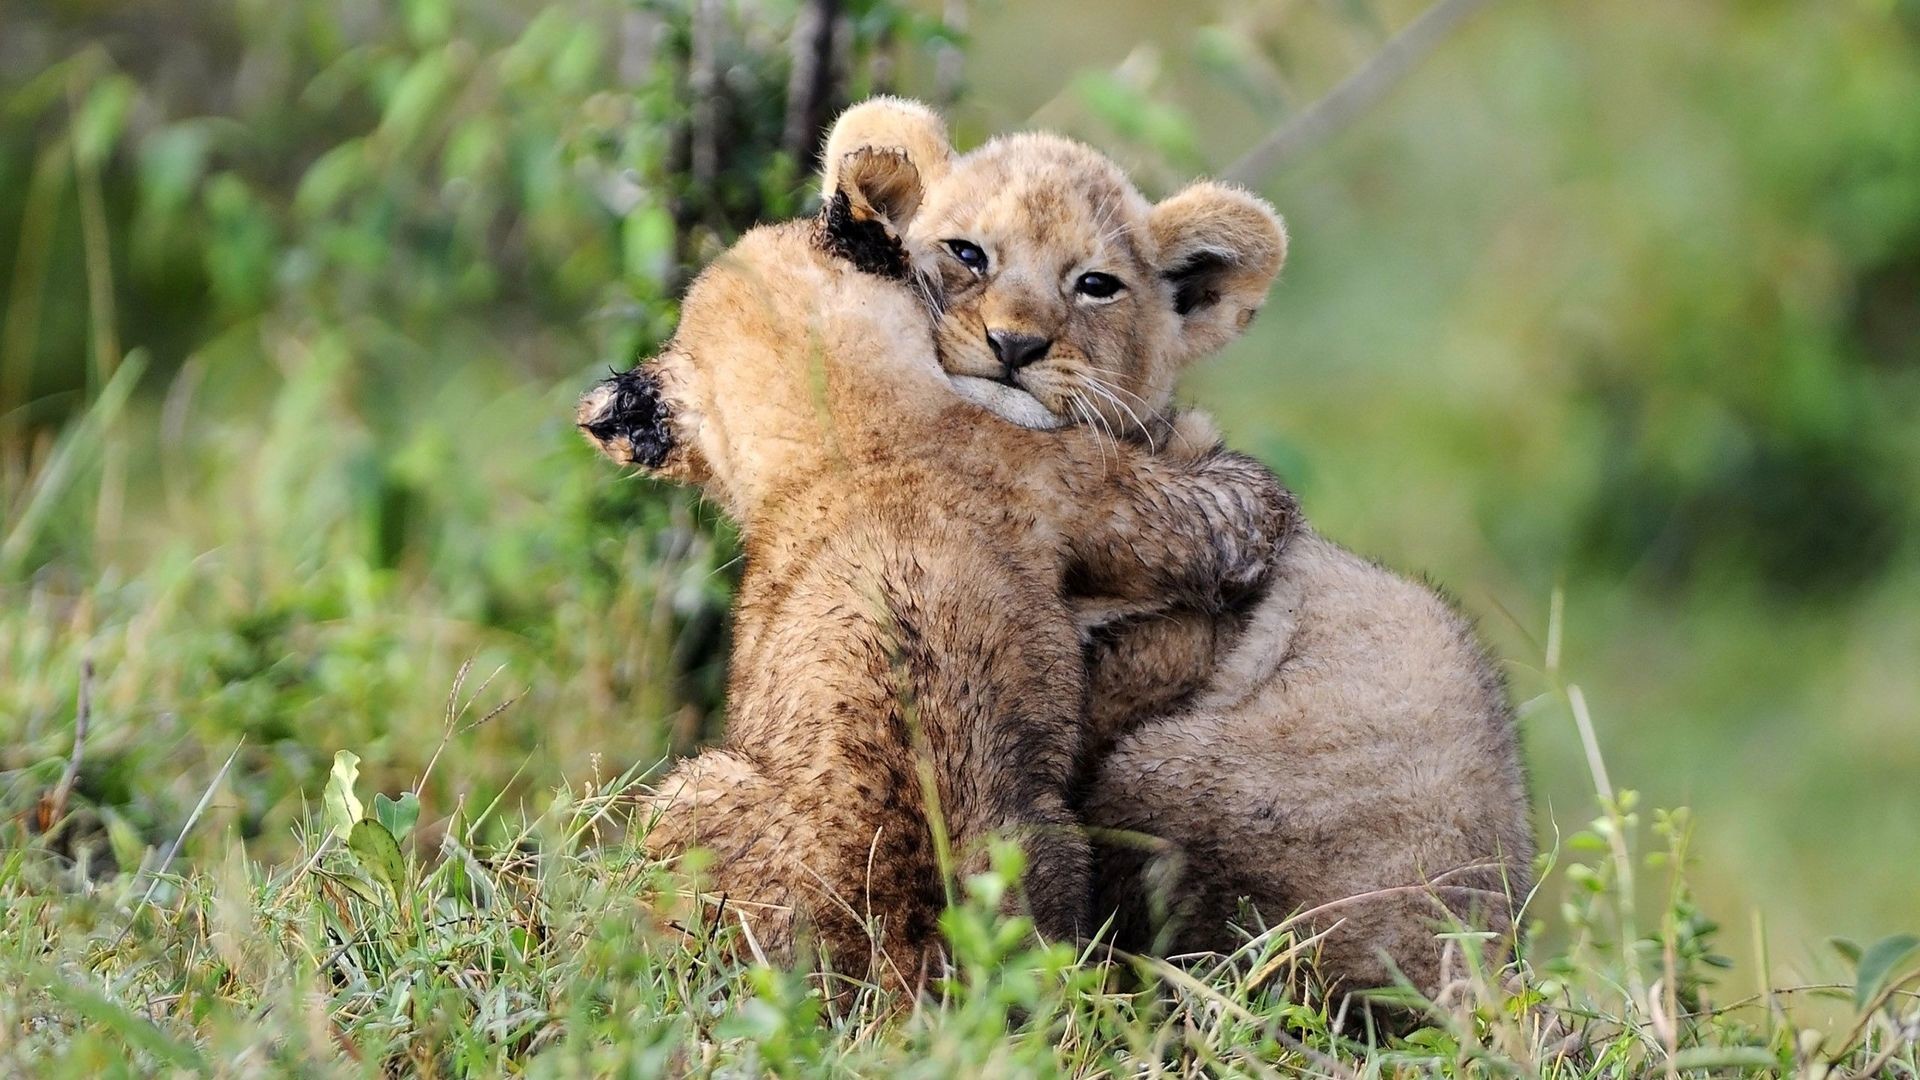 hug wallpaper herunterladen,tierwelt,landtier,felidae,löwe,safari